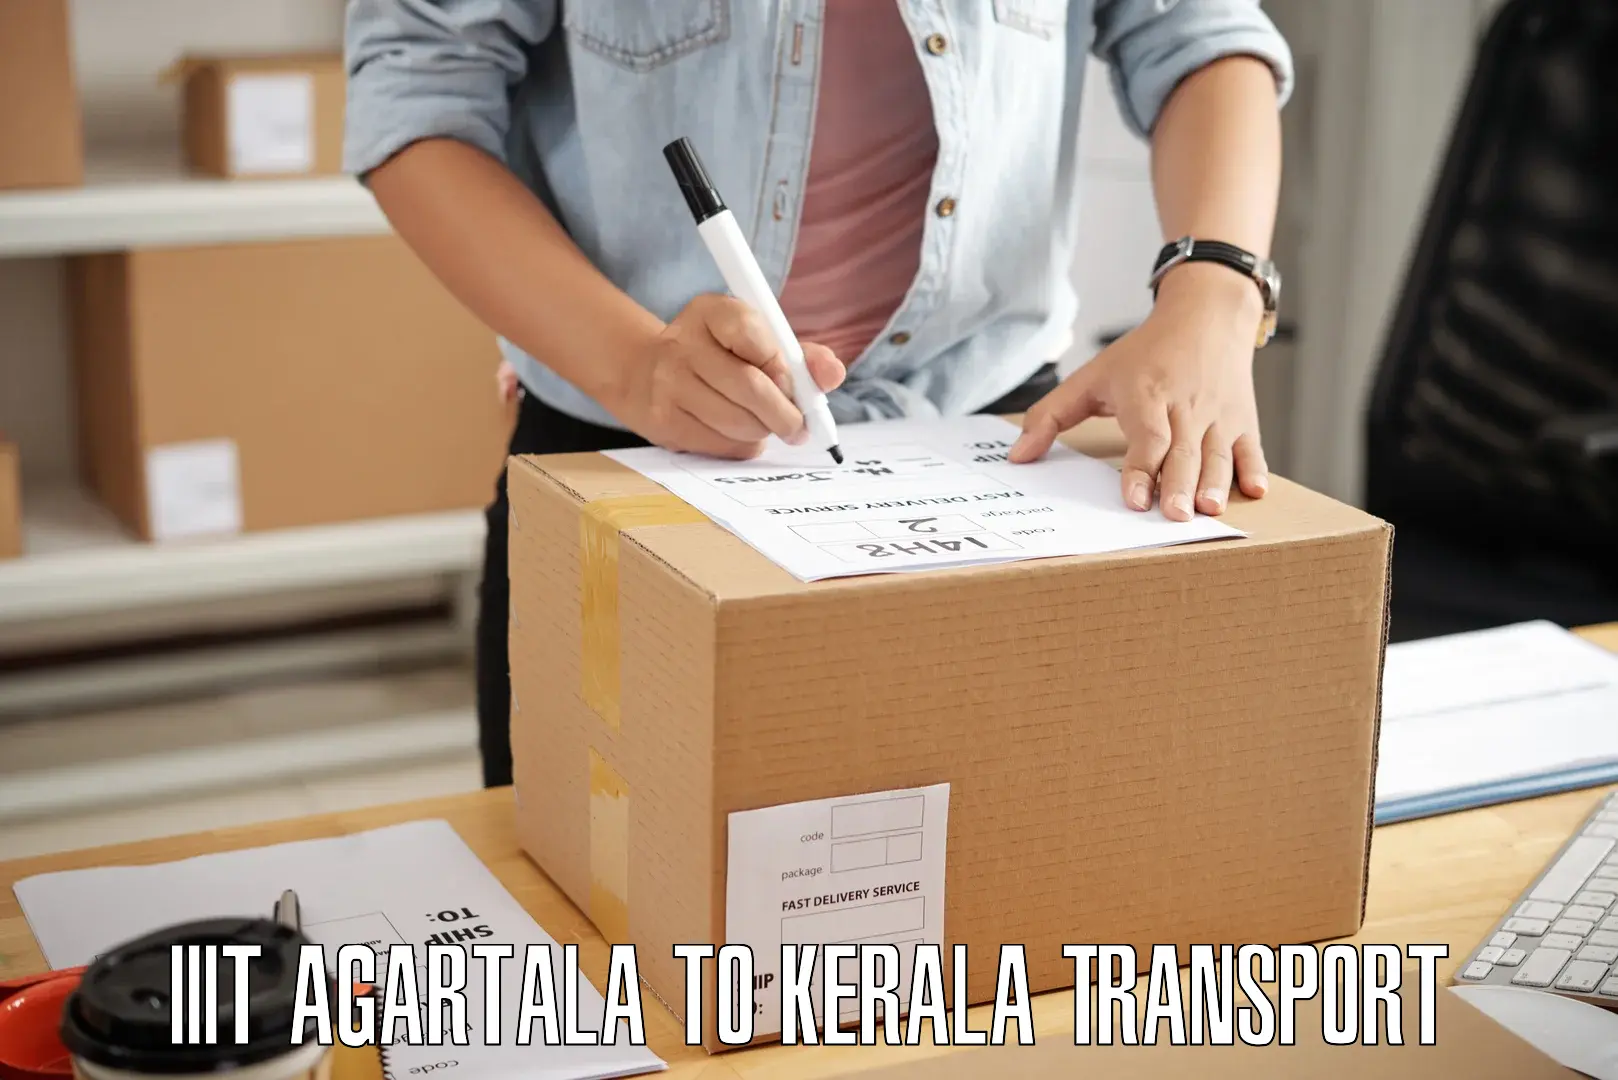 Interstate goods transport IIIT Agartala to Kattappana